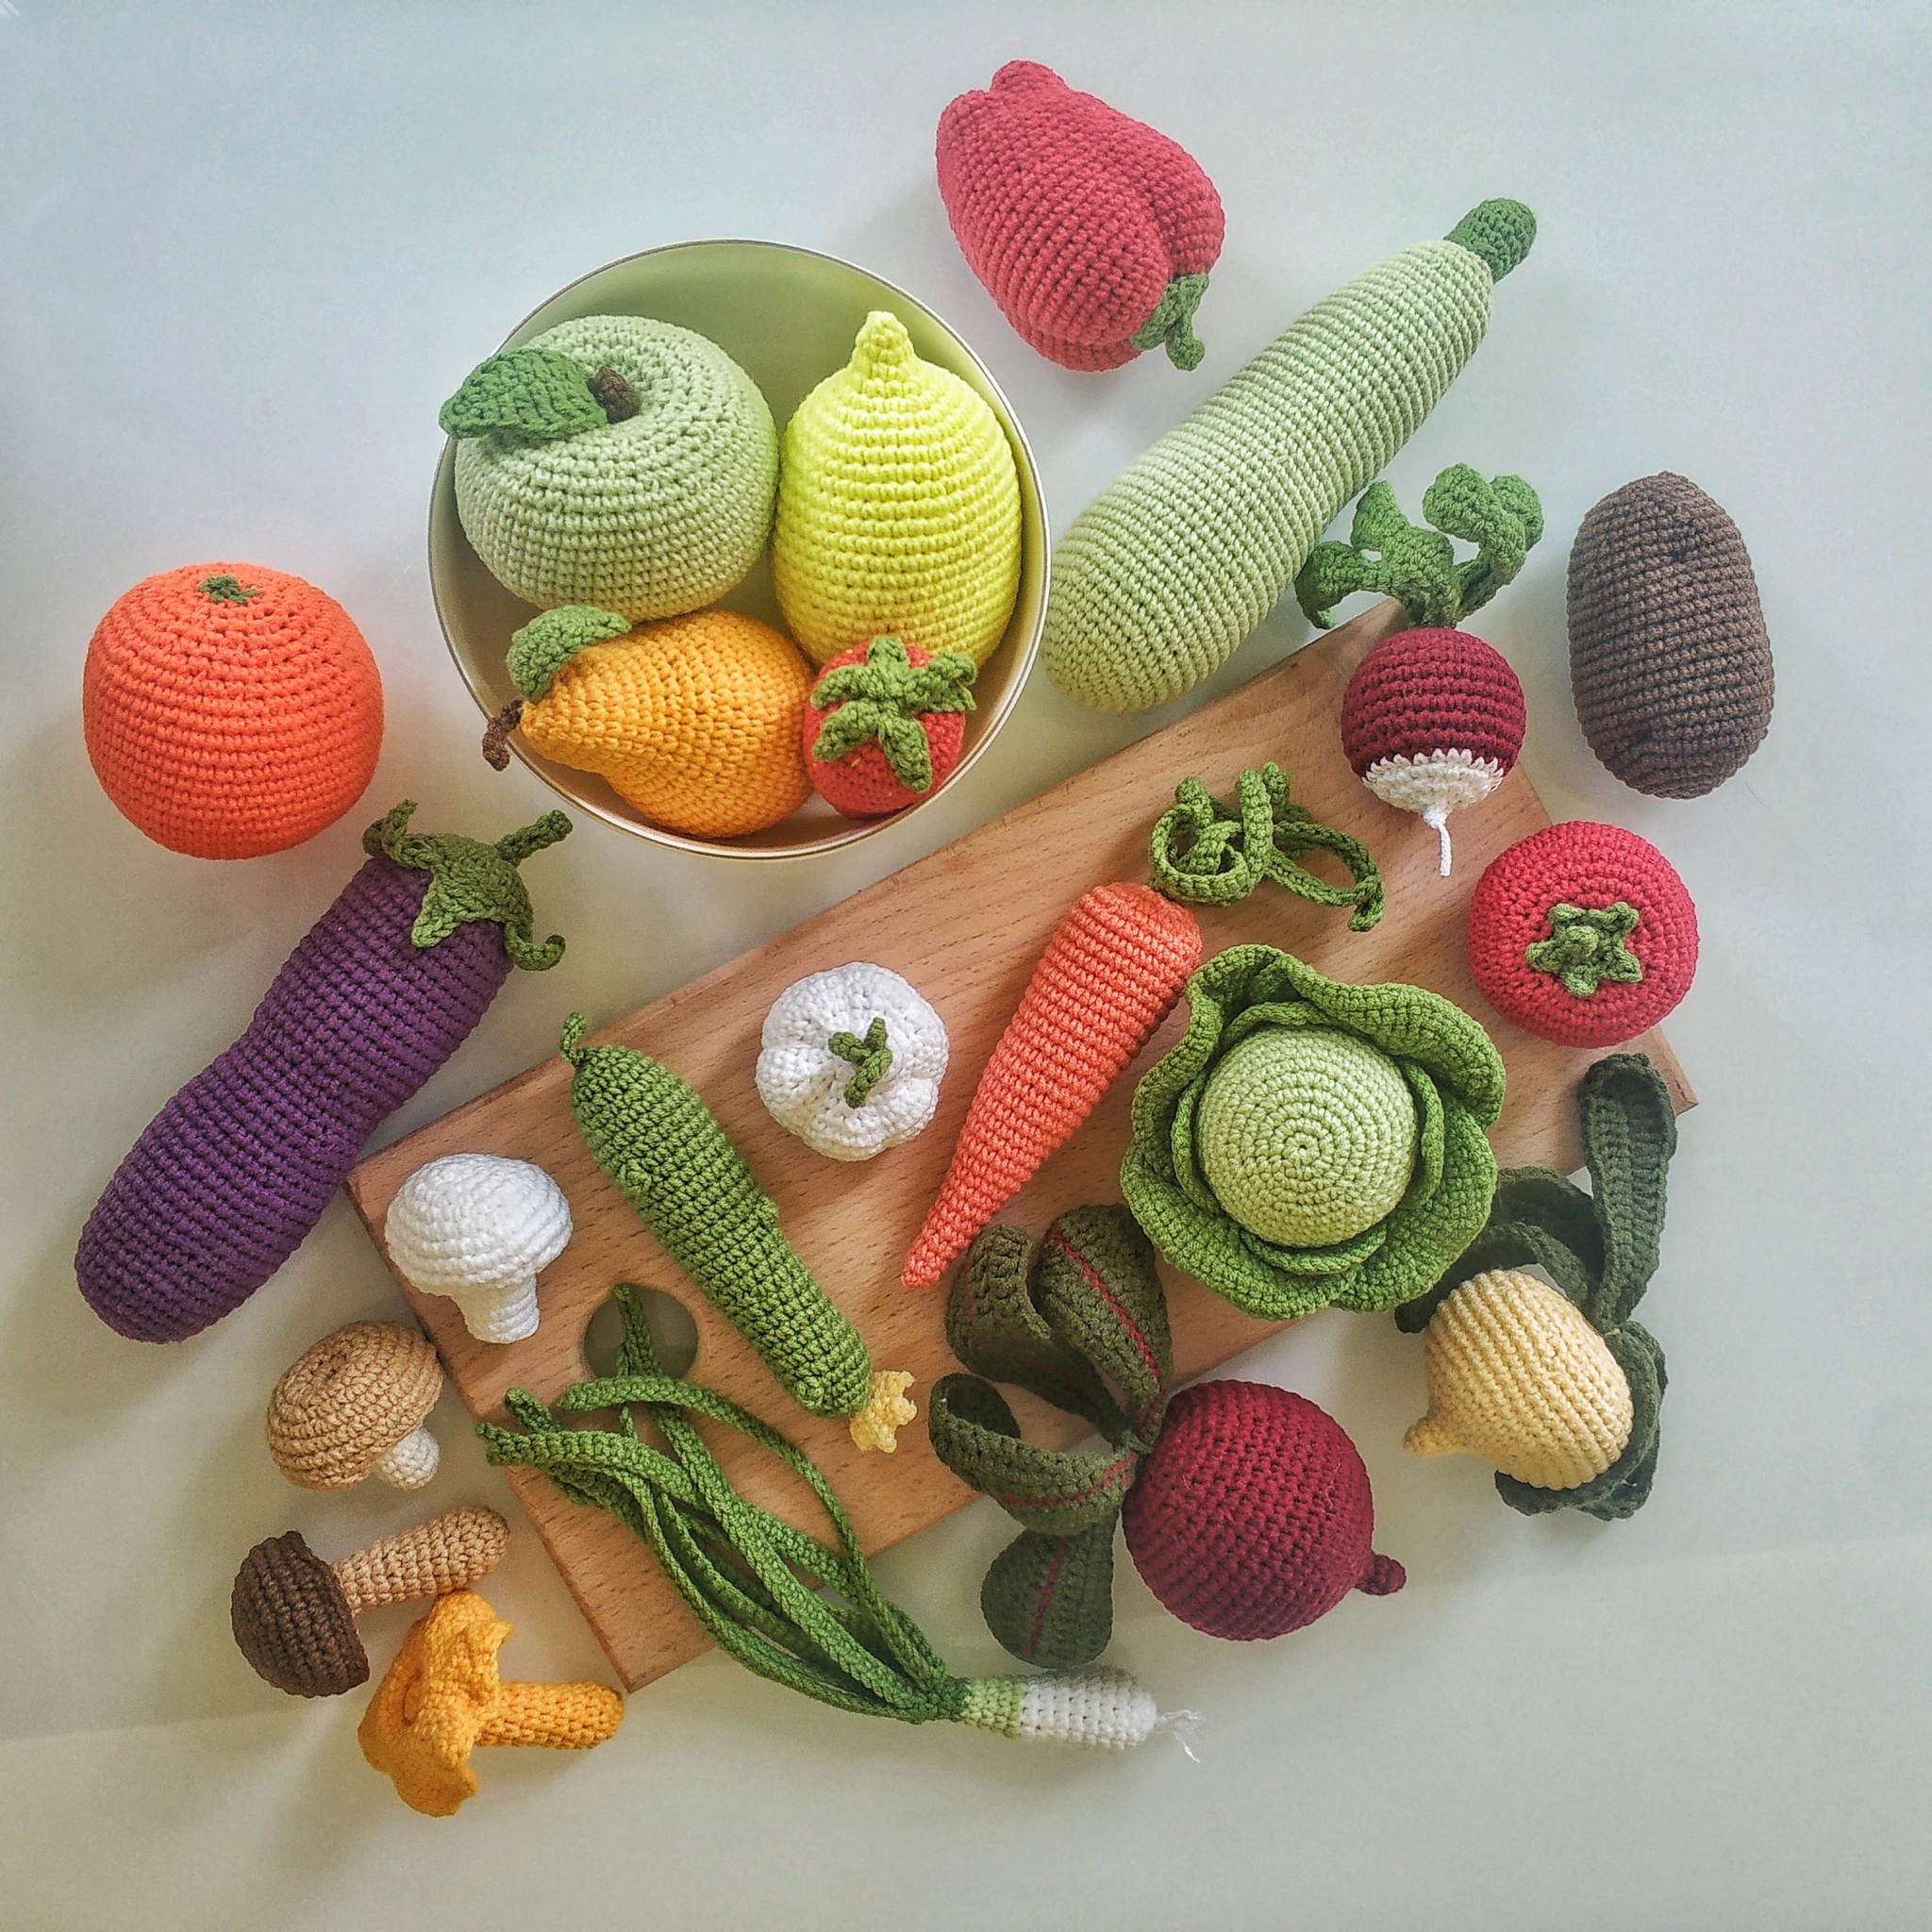 Поделки из овощей и фруктов своими руками: 5 оригинальных идей